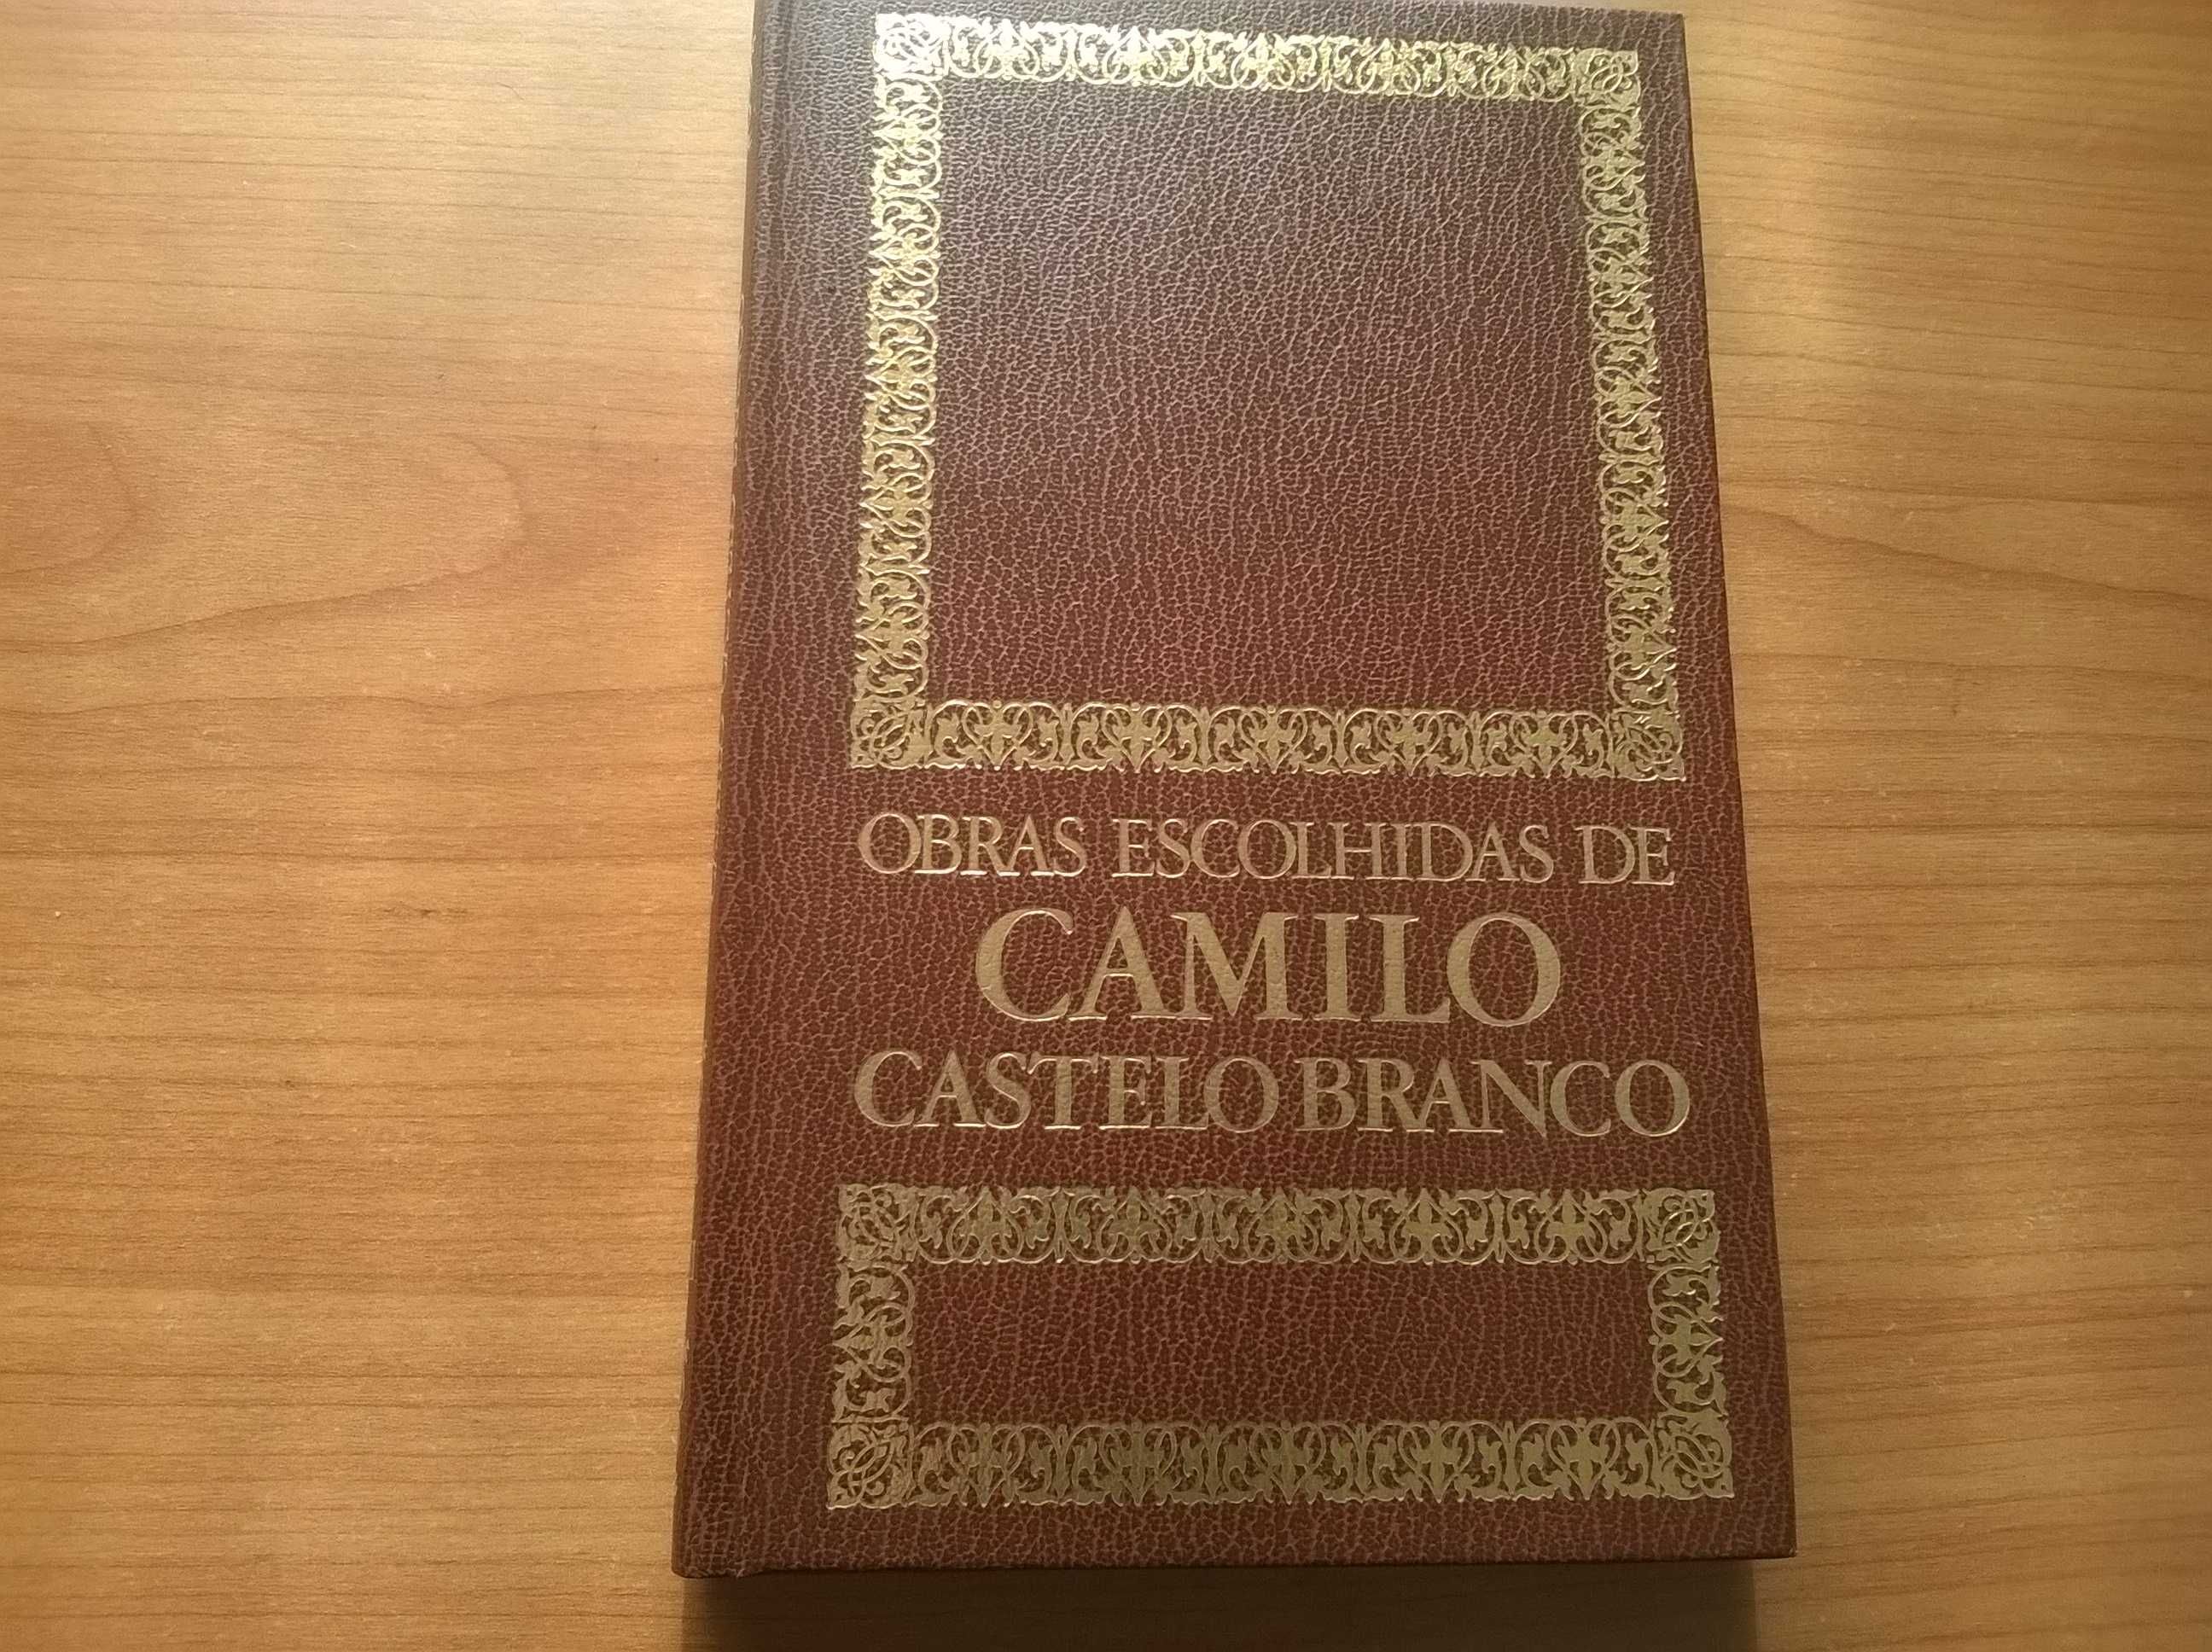 O Retrato de Ricardina - Camilo Castelo Branco (portes grátis)